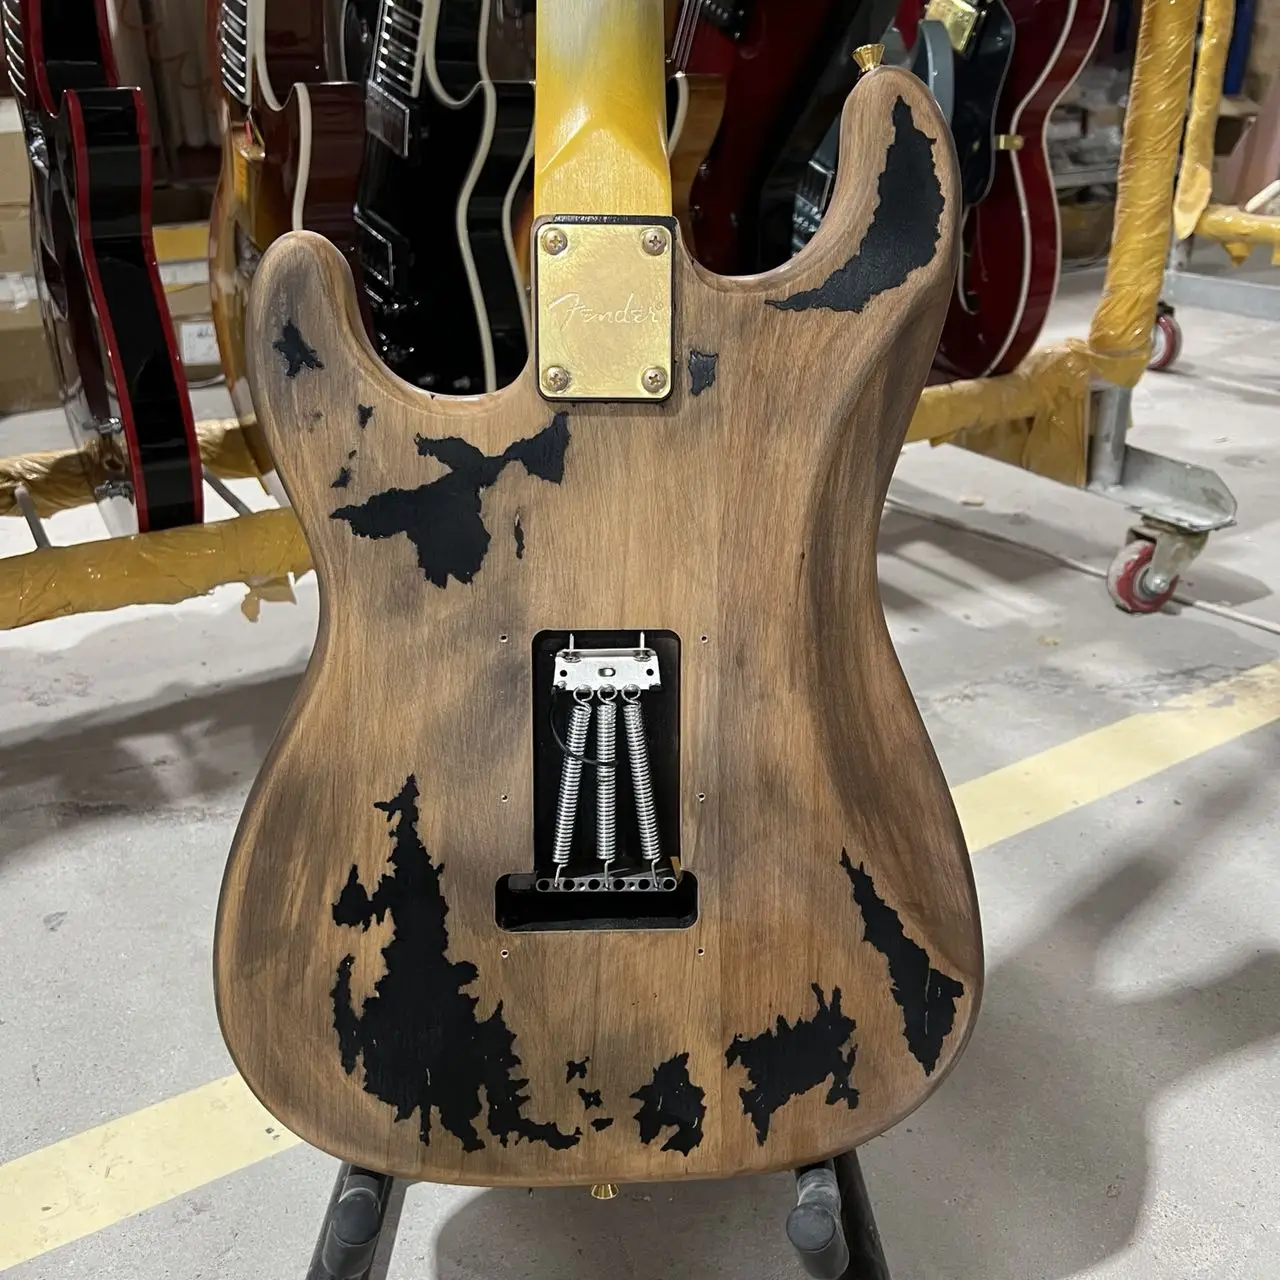 John Mayer Kalıntı Strat Elektro Gitar Siyah Renk Kızılağaç Gövde Klavye El Yapımı Yüksek Kalite Ücretsiz Kargo Rosewood Görüntü  5